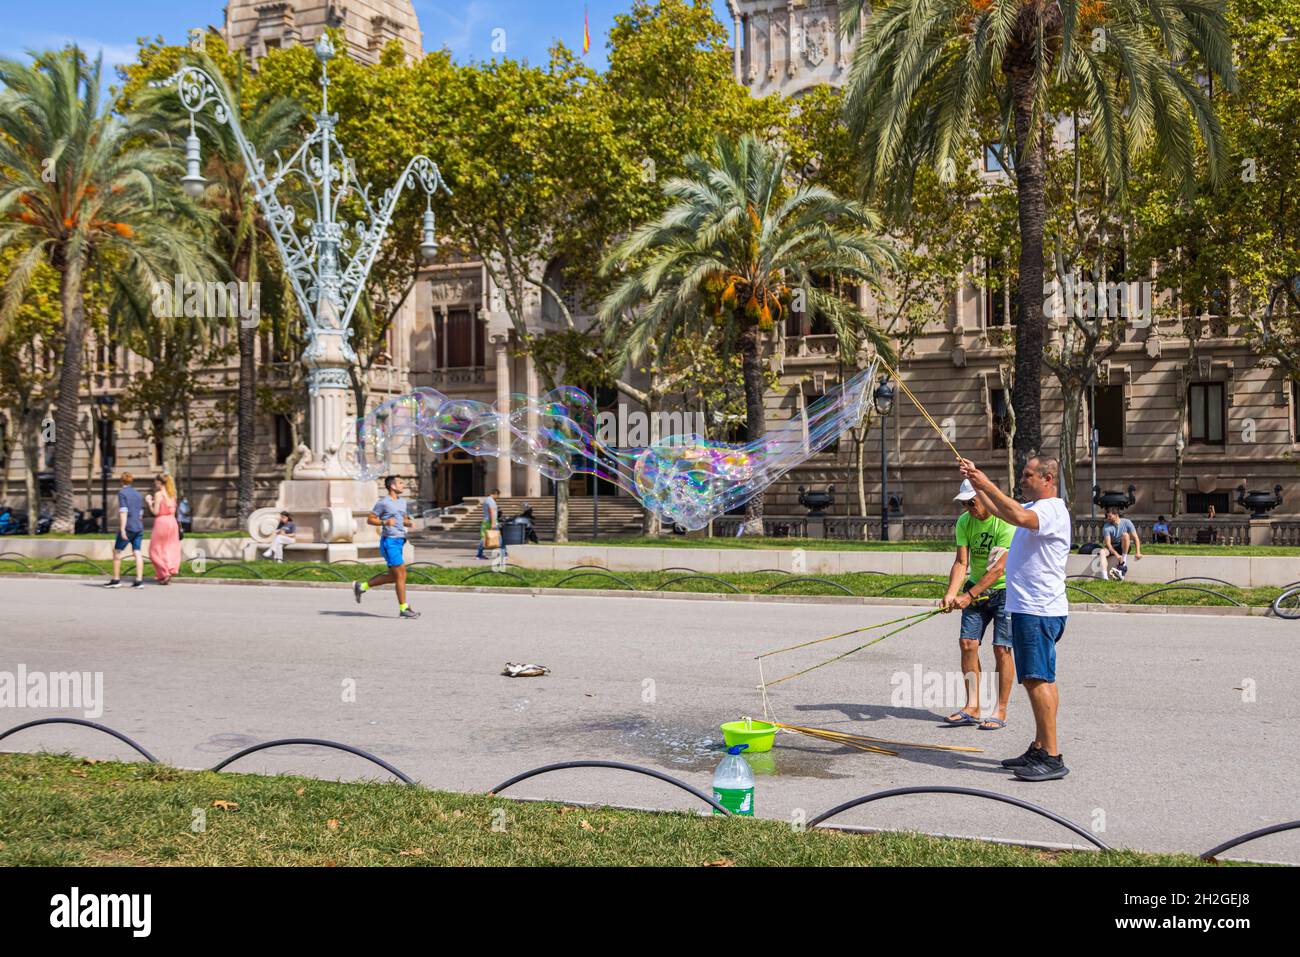 Barcelona, Spanien - 20. September 2021: Zwei Mann machen an einem Spätsommernachmittag auf den Straßen in der Nähe des Arc de Triomf riesige Seifenblasen. Touristen d Stockfoto